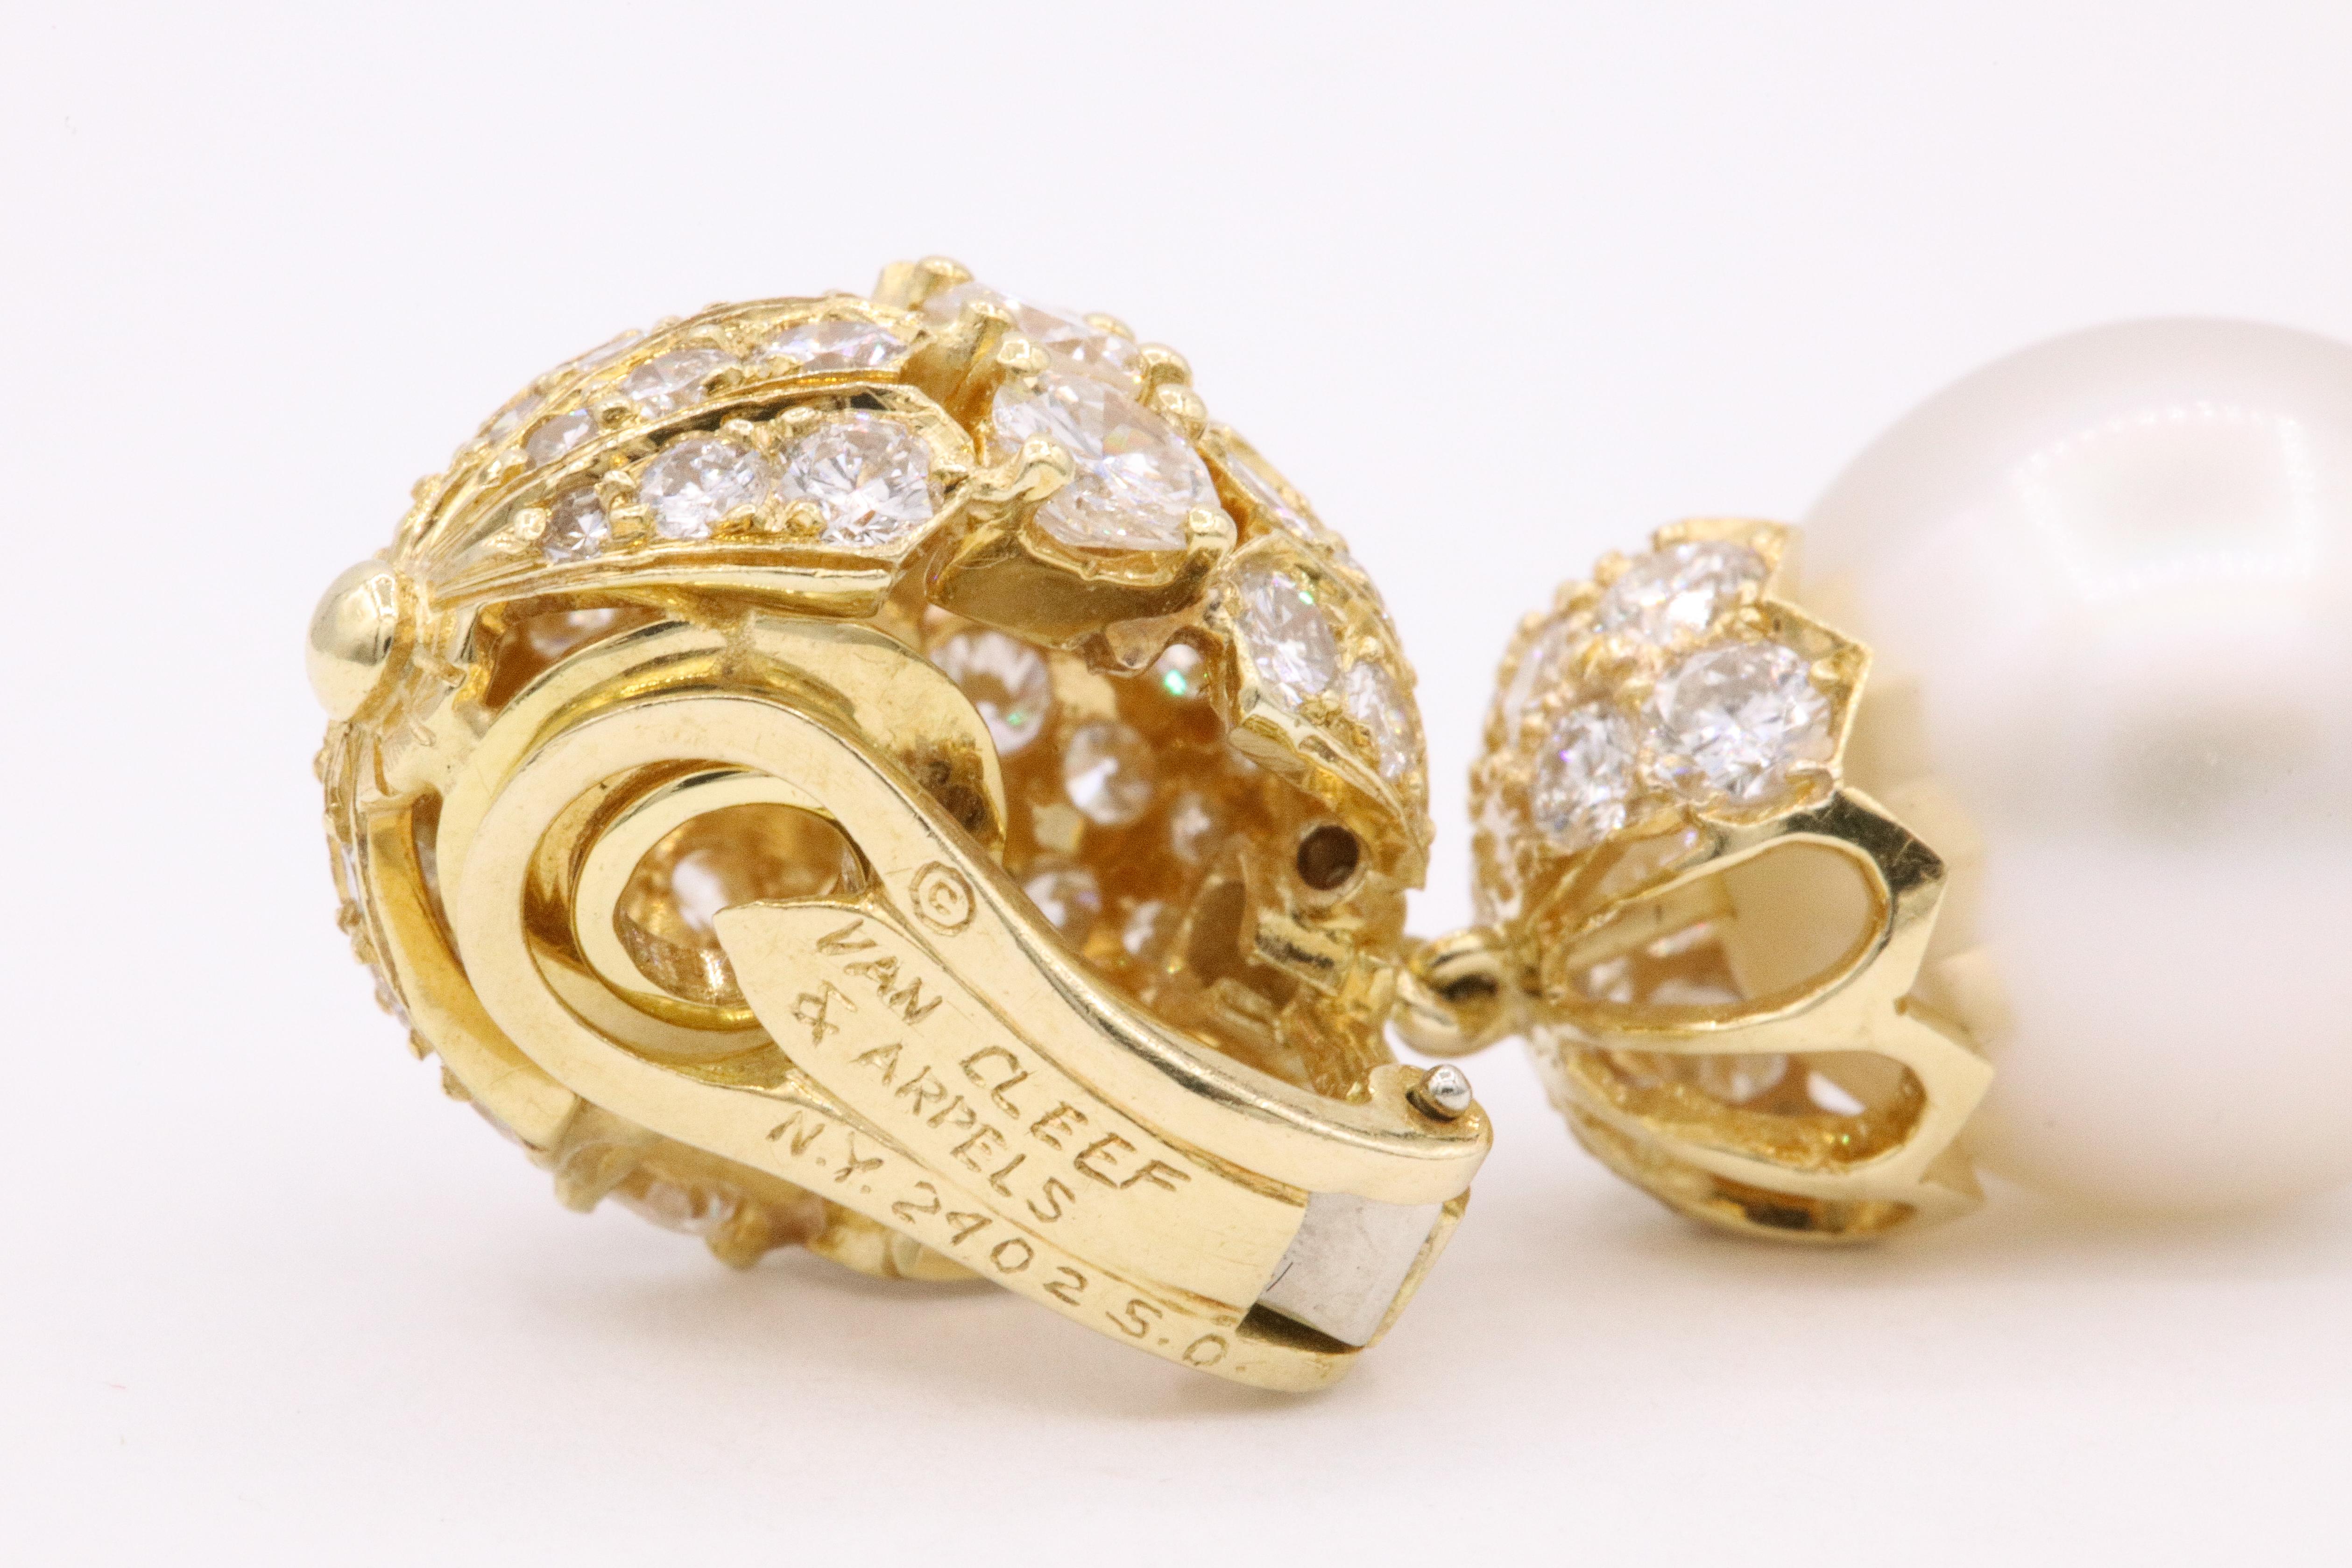 Contemporary Van Cleef & Arpels Diamond Pearl Earrings, Property of Rockefeller